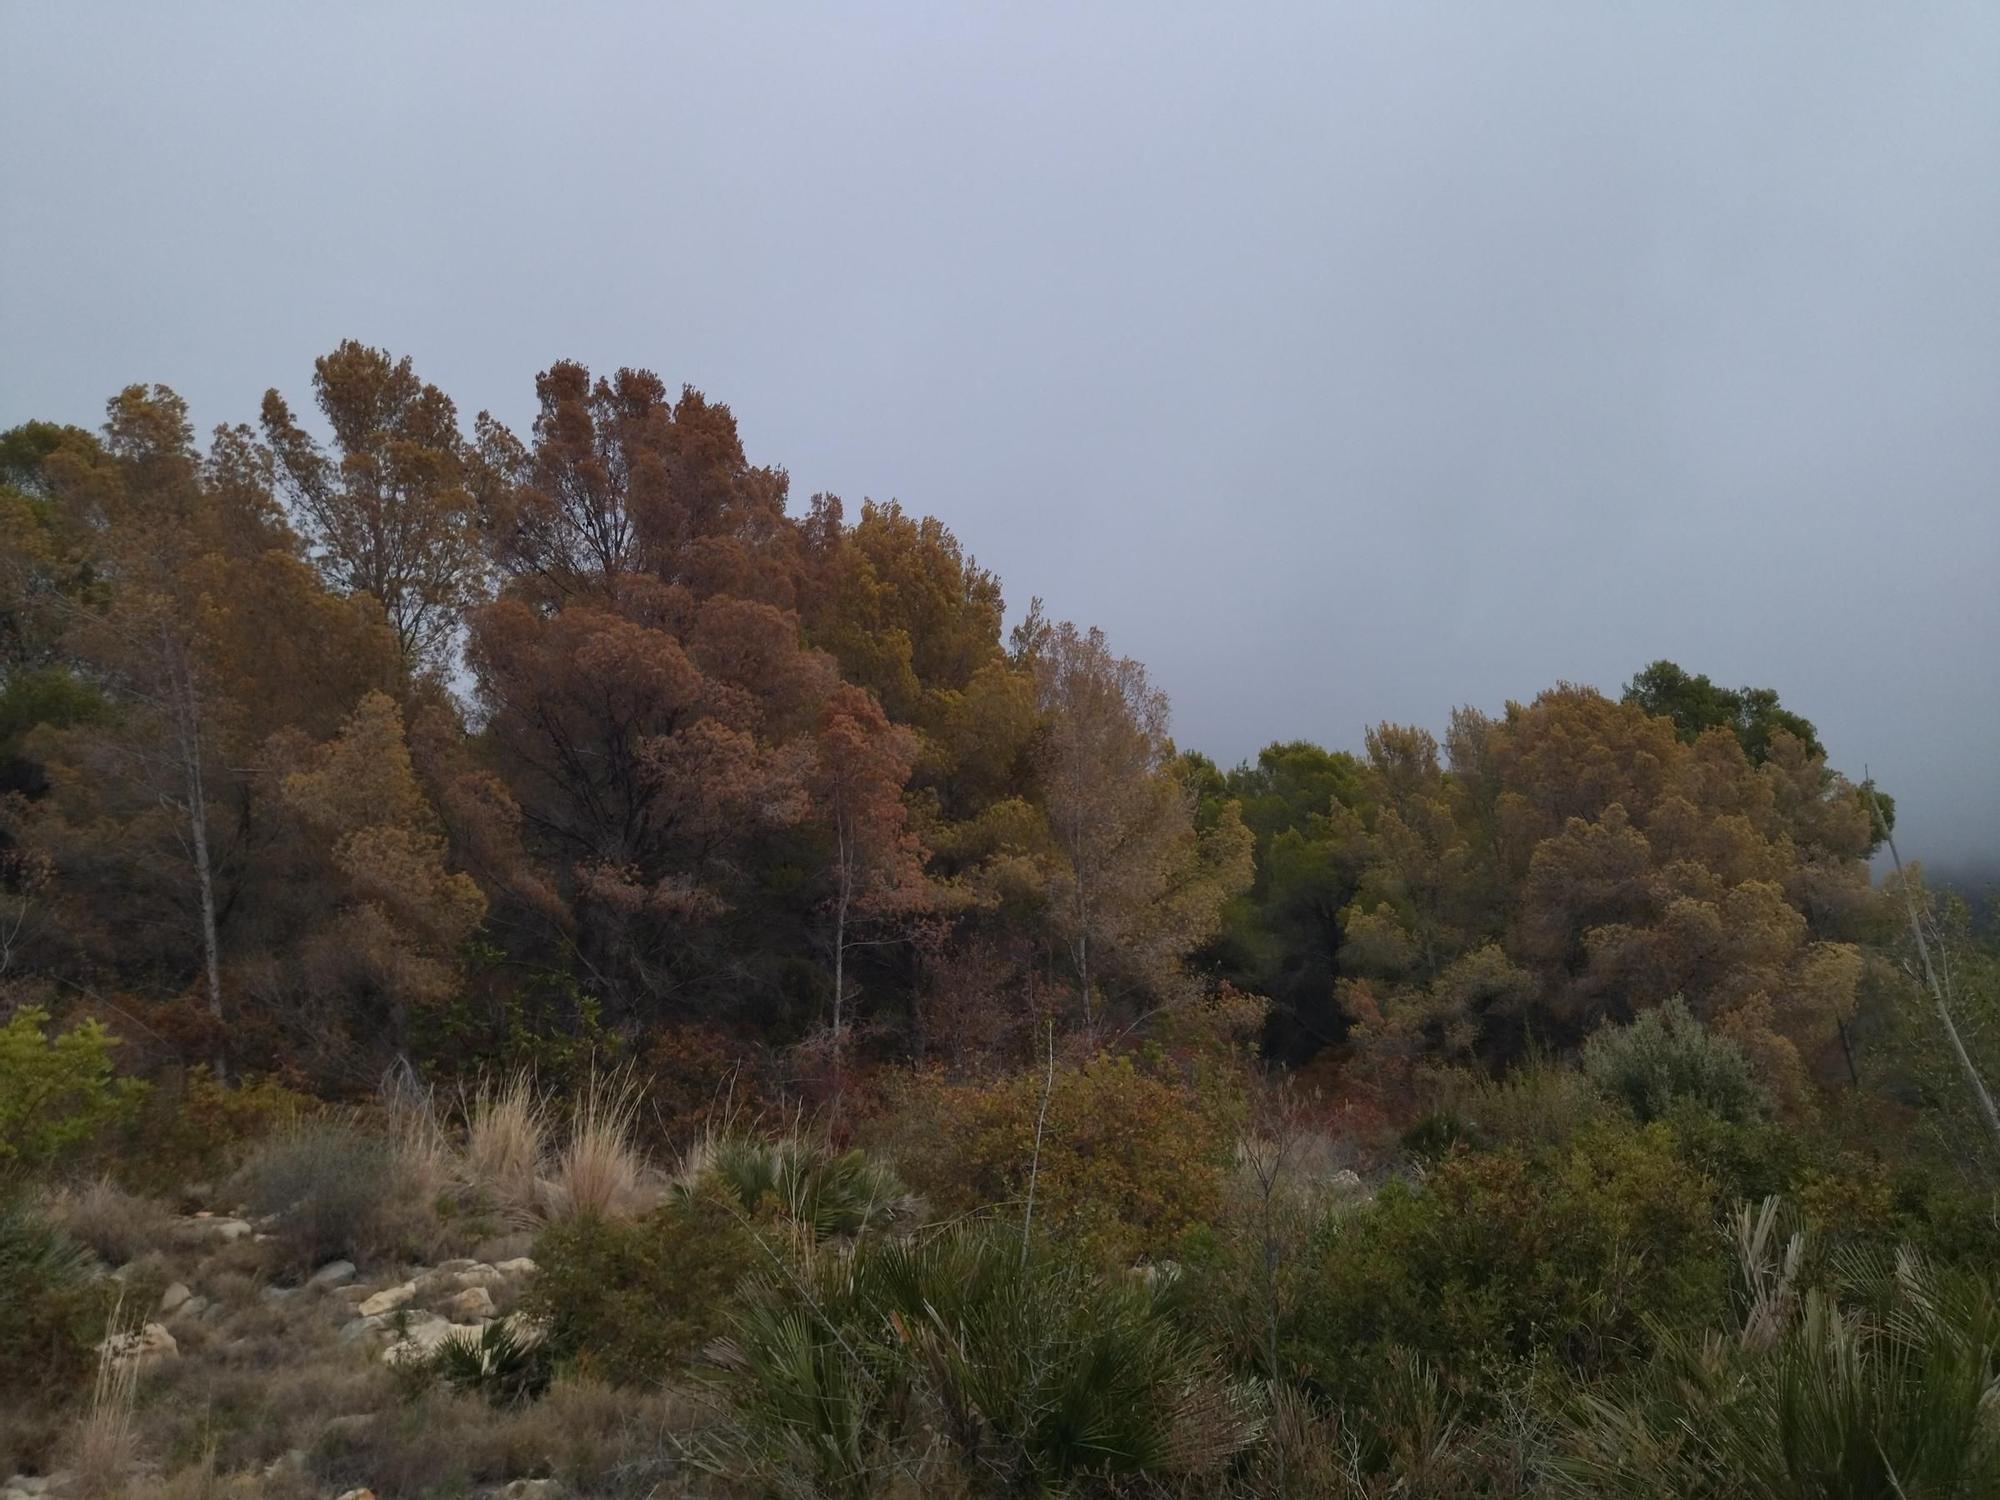 El Montgó pide agua a gritos: paisaje amarillo por la sequía (imágenes)